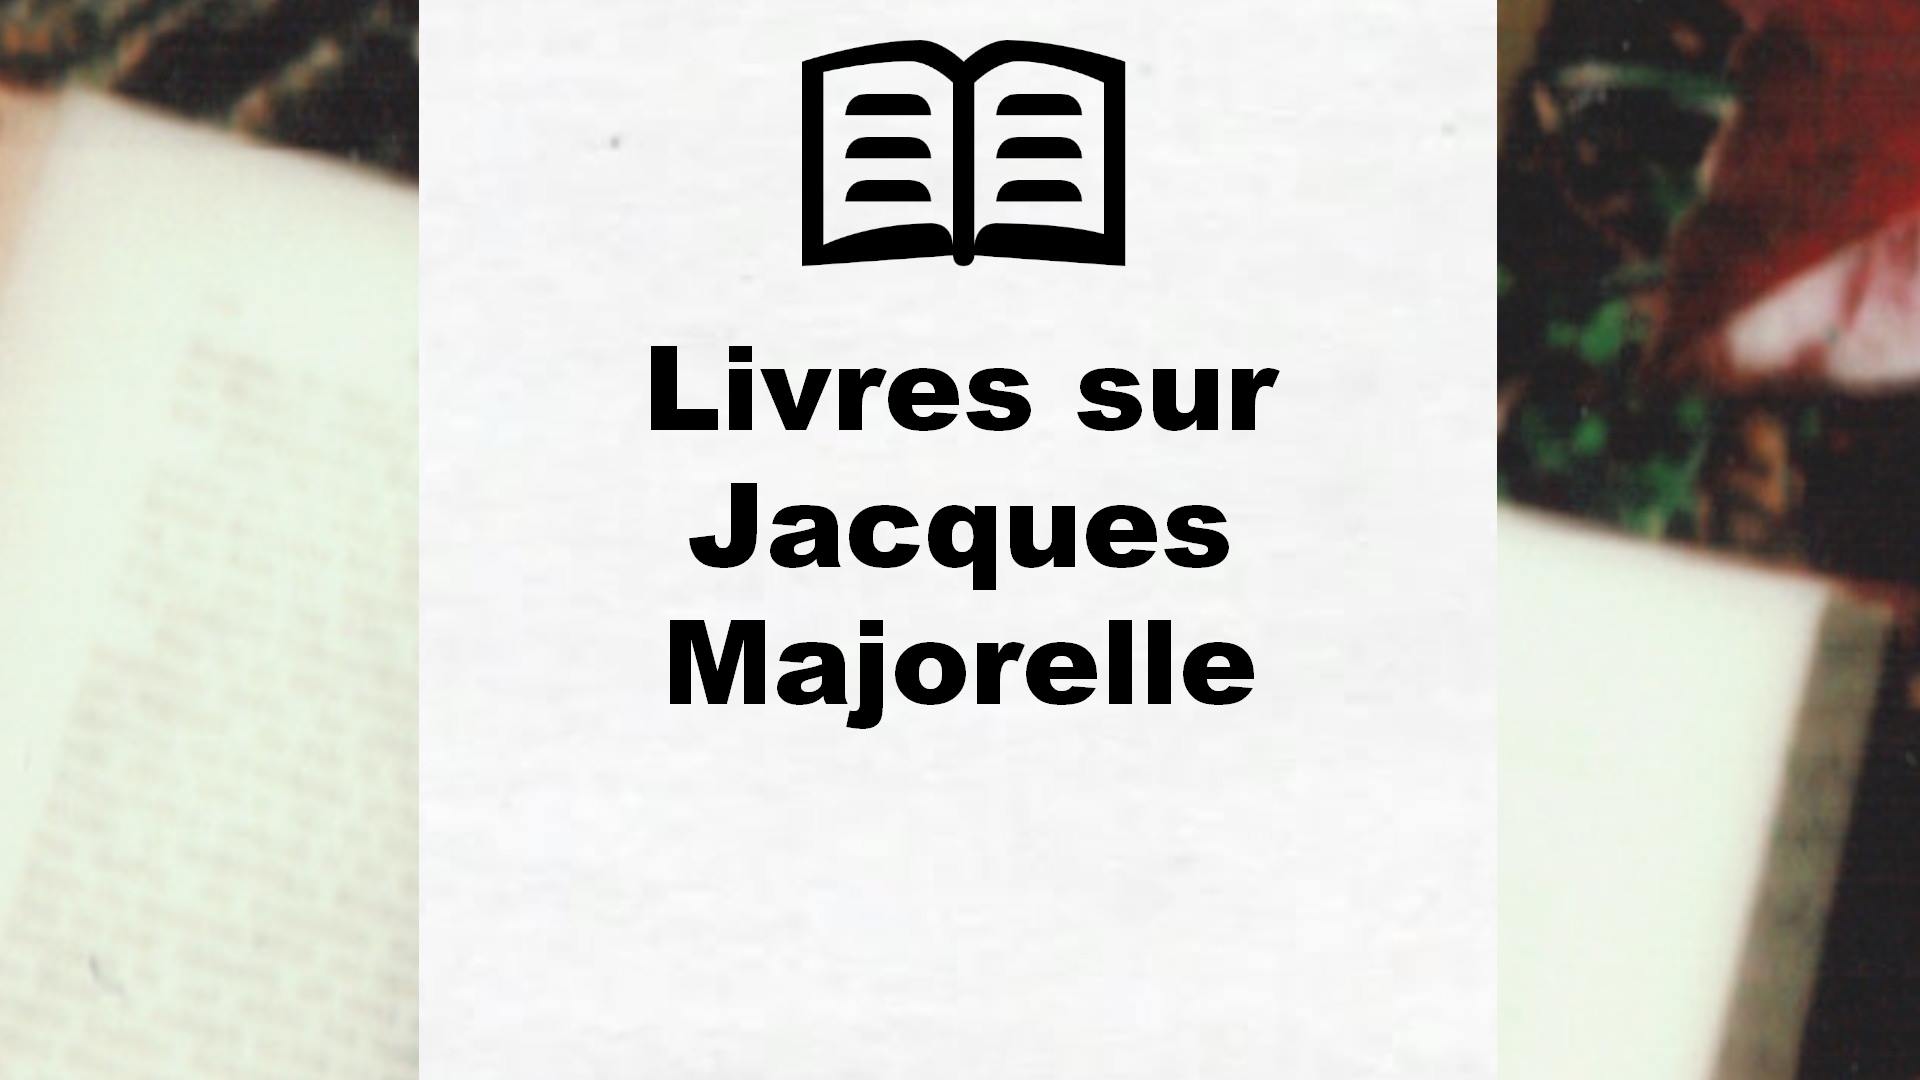 Livres sur Jacques Majorelle